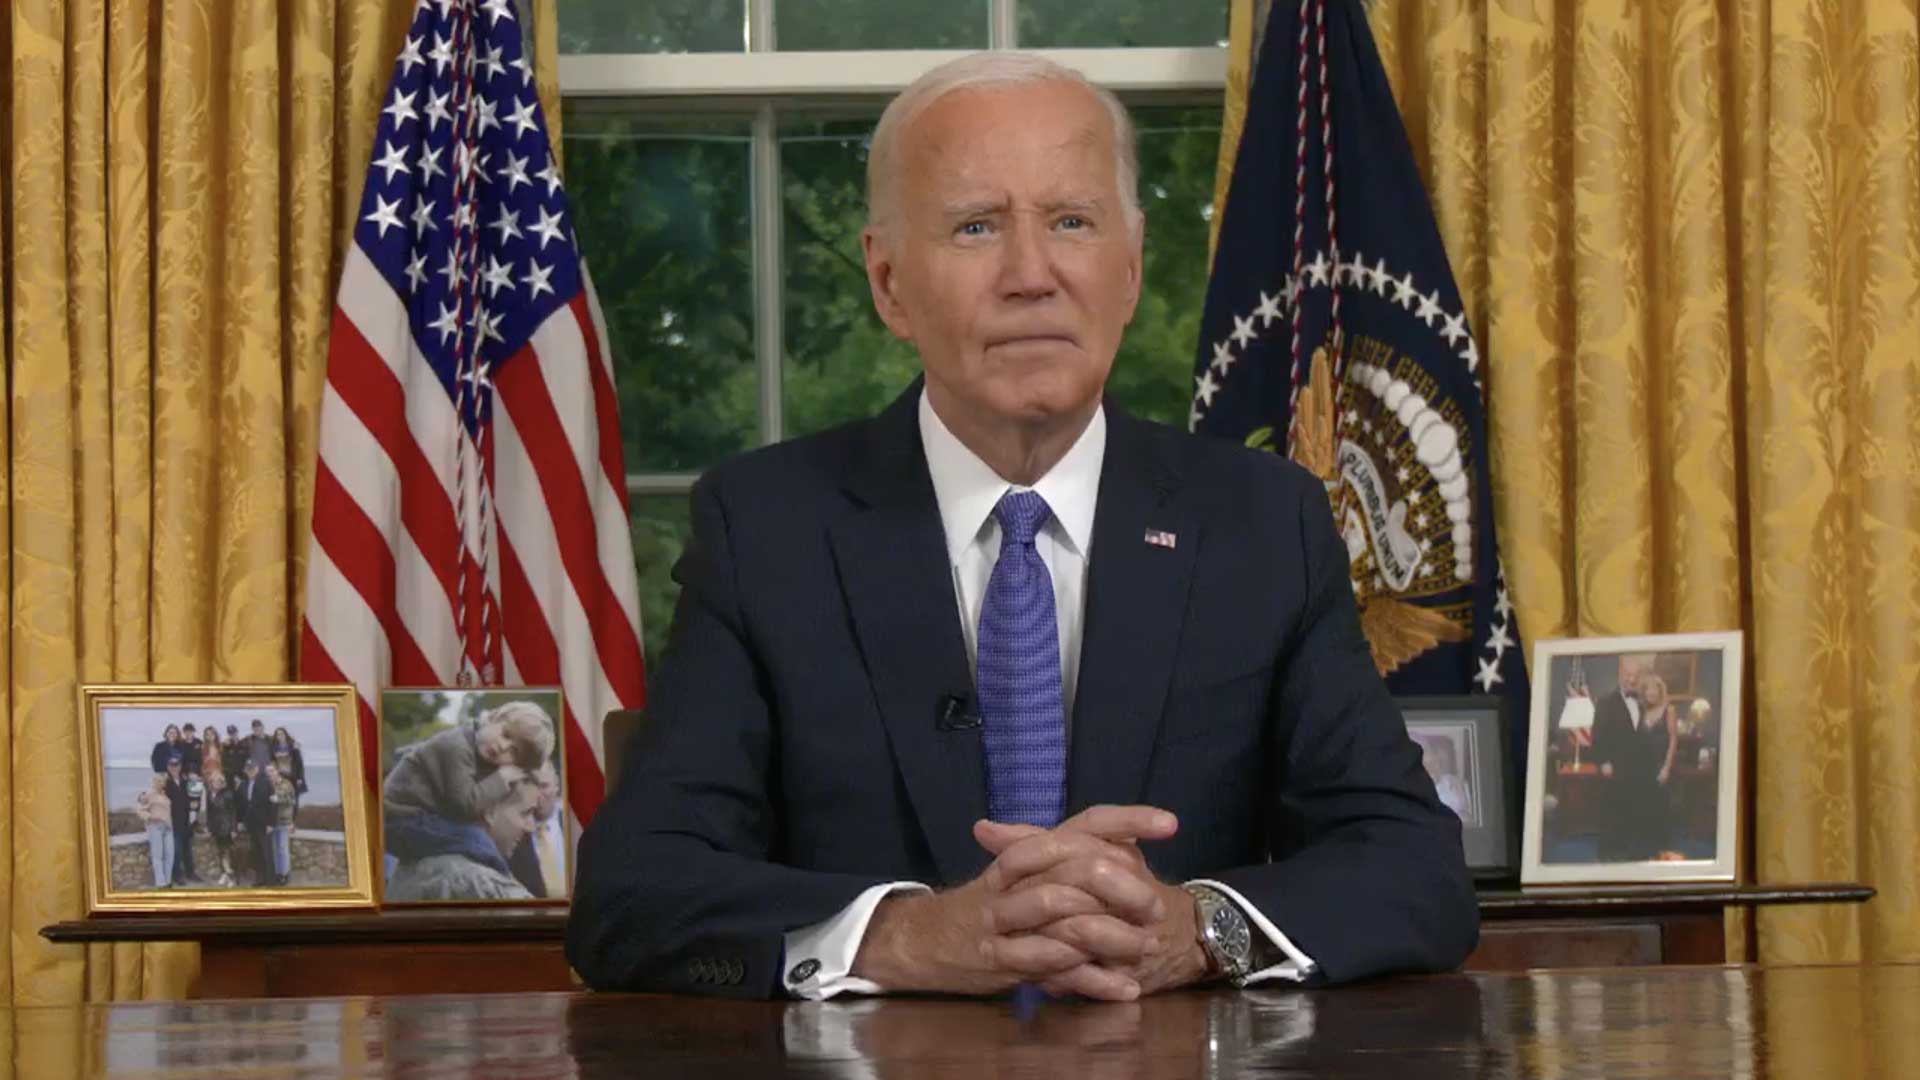 4 takeaways from President Biden’s Oval Office address